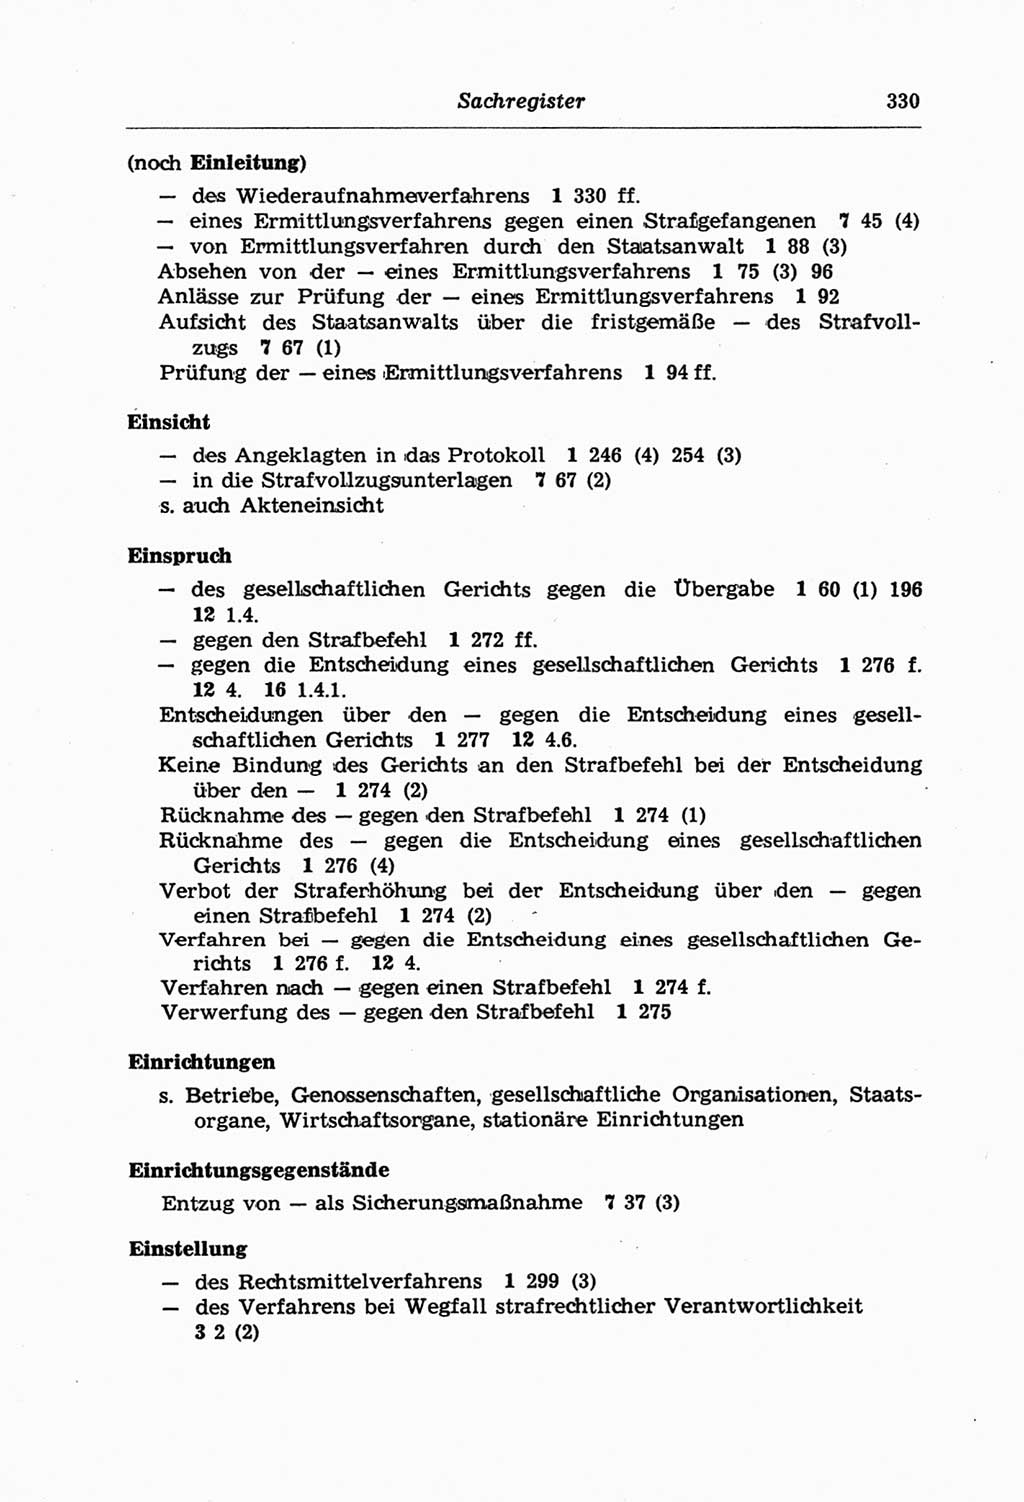 Strafprozeßordnung (StPO) der Deutschen Demokratischen Republik (DDR) und angrenzende Gesetze und Bestimmungen 1968, Seite 330 (StPO Ges. Bstgn. DDR 1968, S. 330)